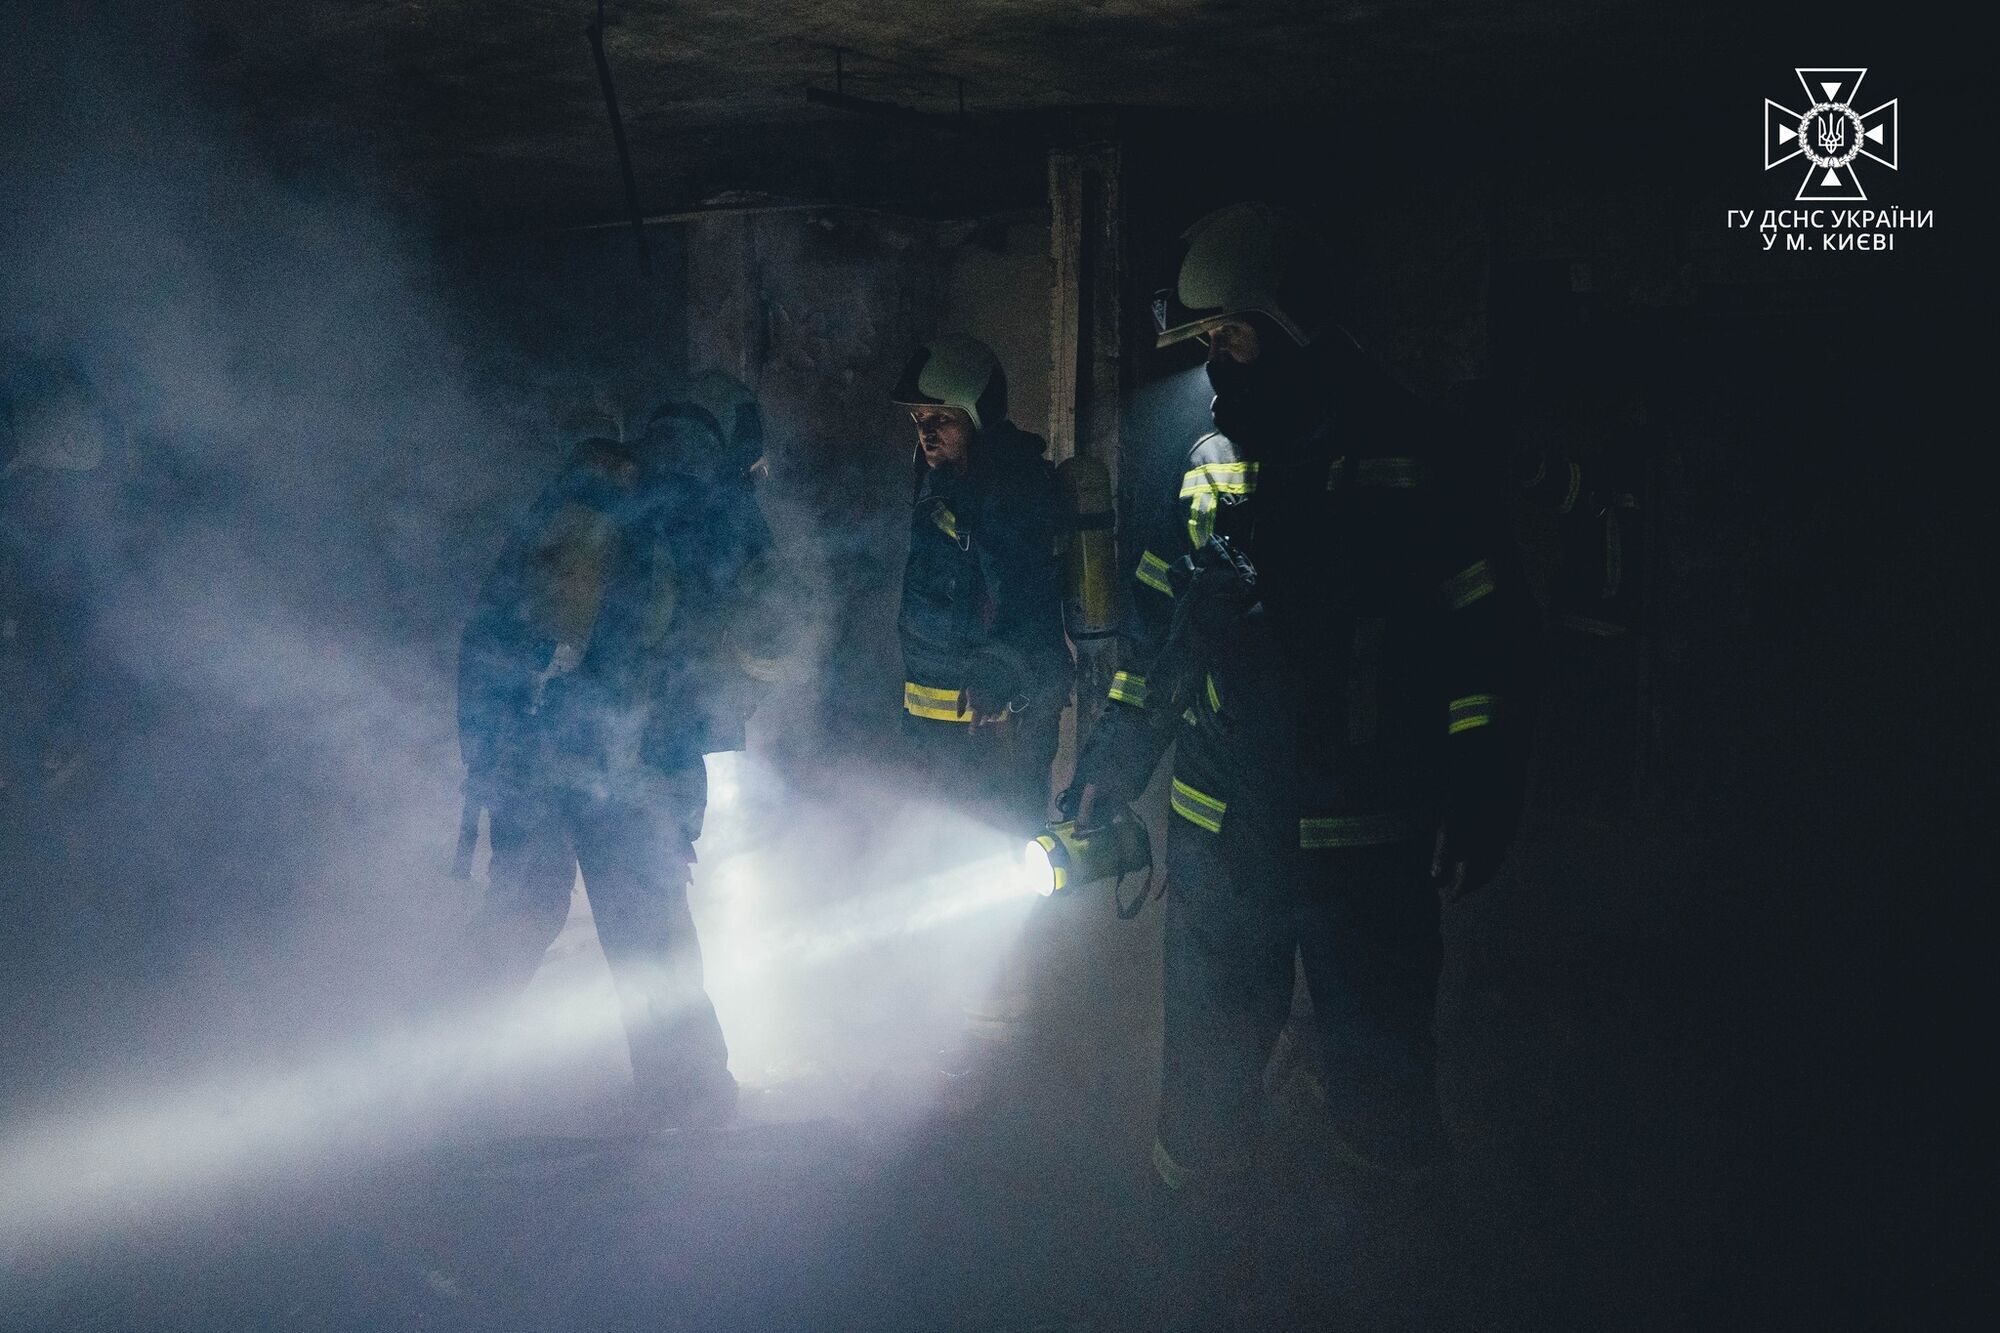 В Киеве произошел пожар на 17-м этаже дома: спасатели не смогли задействовать автолестницу из-за припаркованных авто. Фото